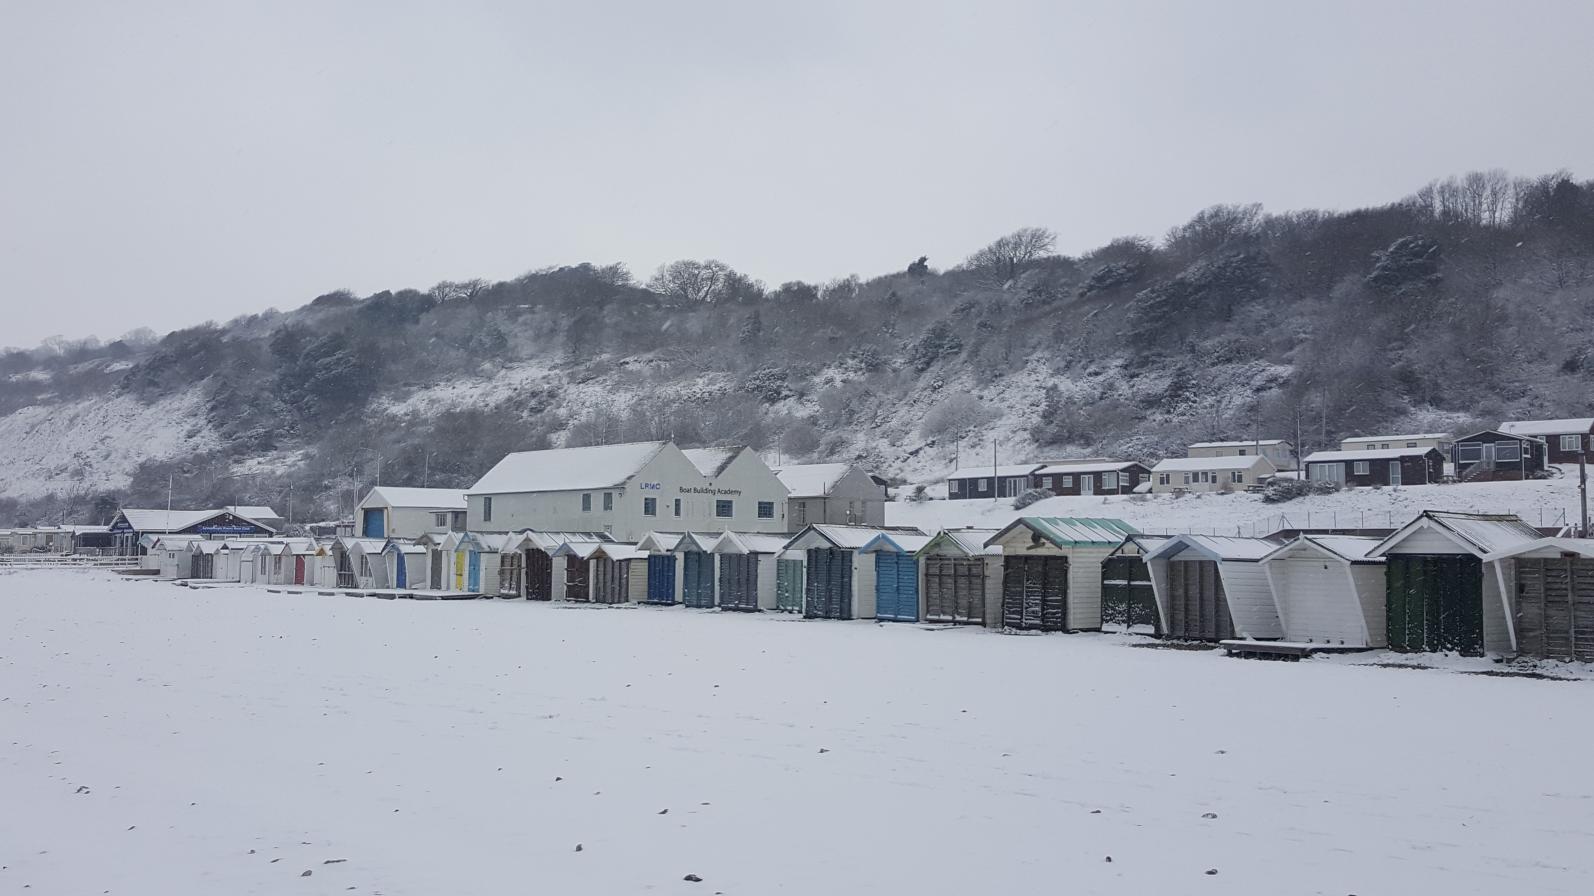 Snow, beach huts Monmouth beach 2018